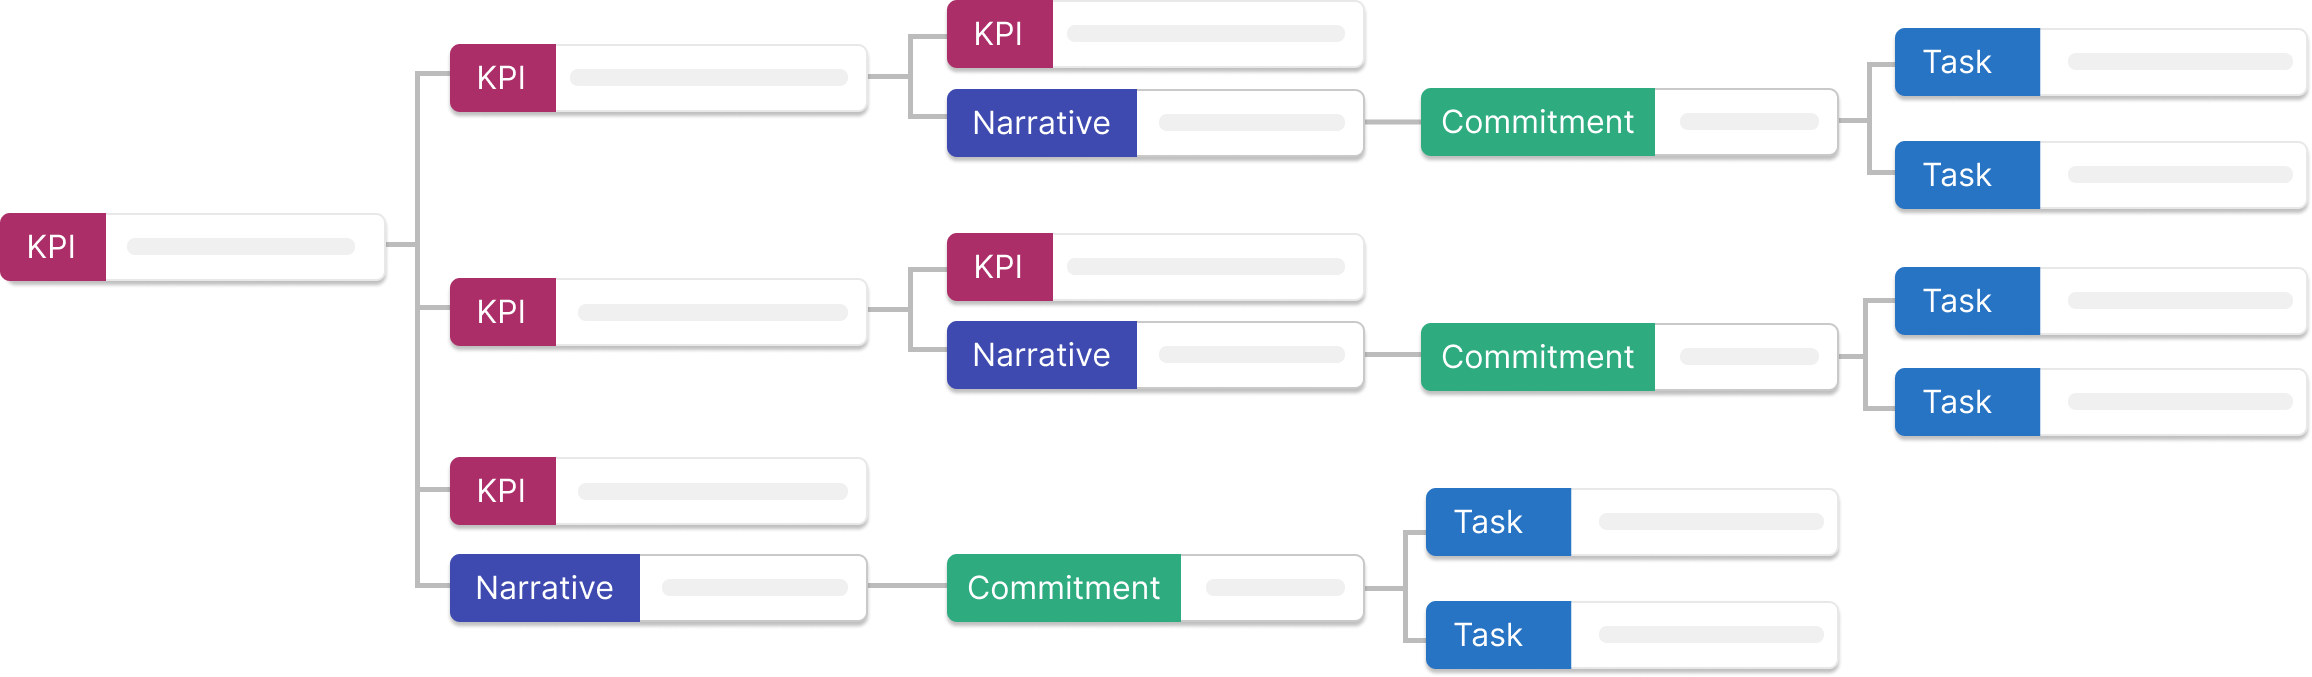 NCT KPI Tree